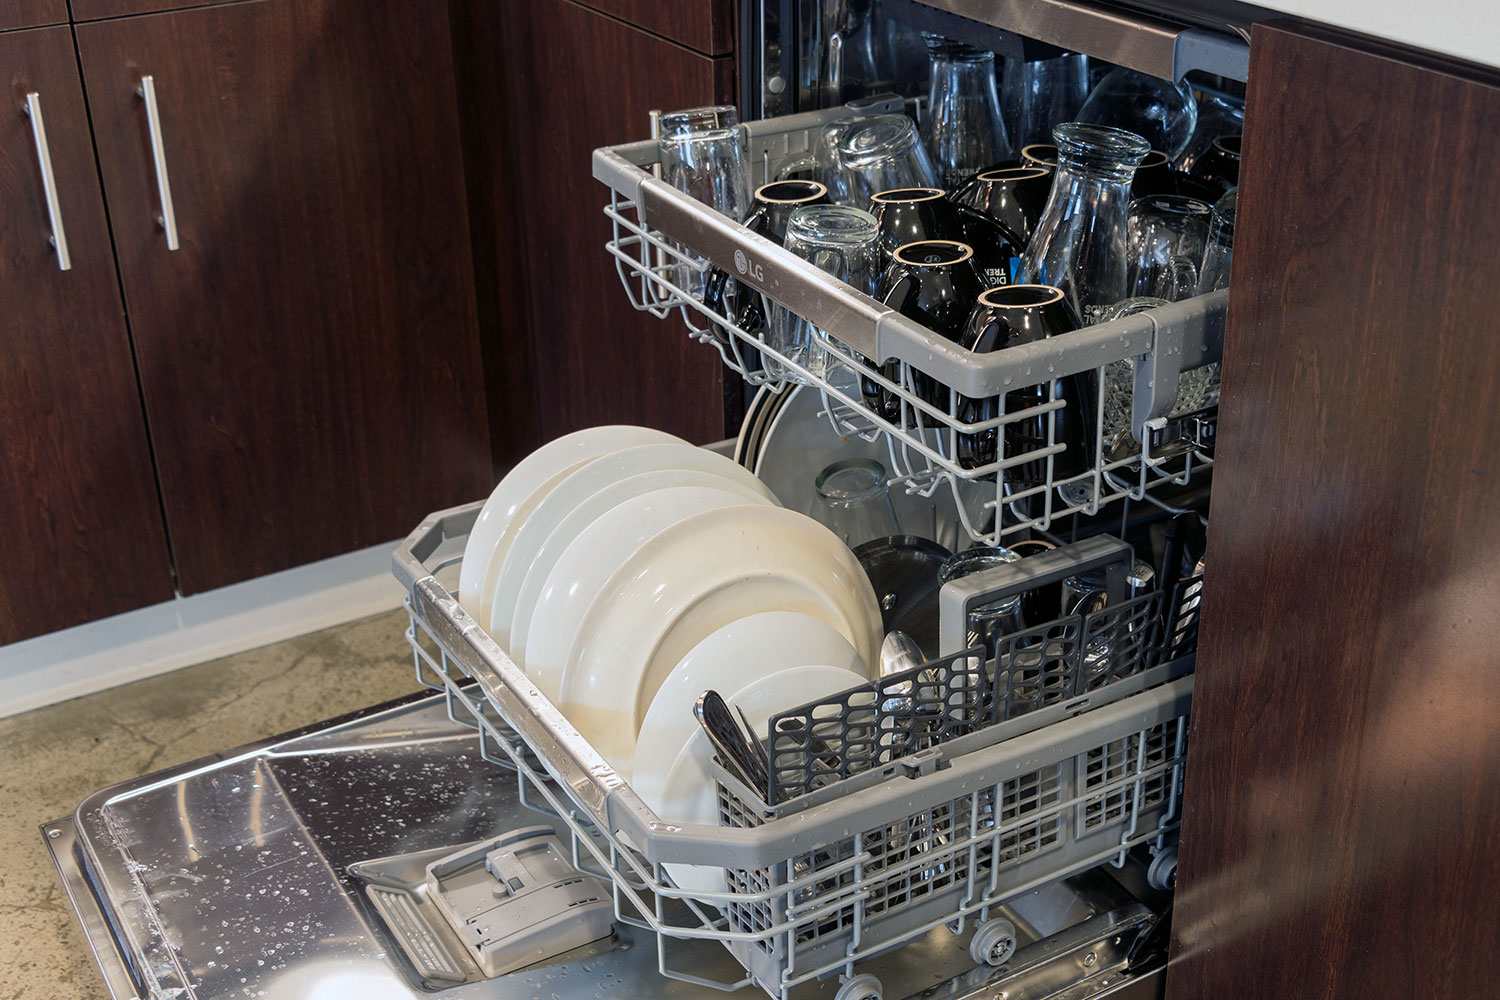 Ремонт посудомоечных машин bosch в москве. Для посудомоечных машин. Разобранная посудомоечная машина. Посудомоечная машина в разборе. Посудомоечная машина изнутри.